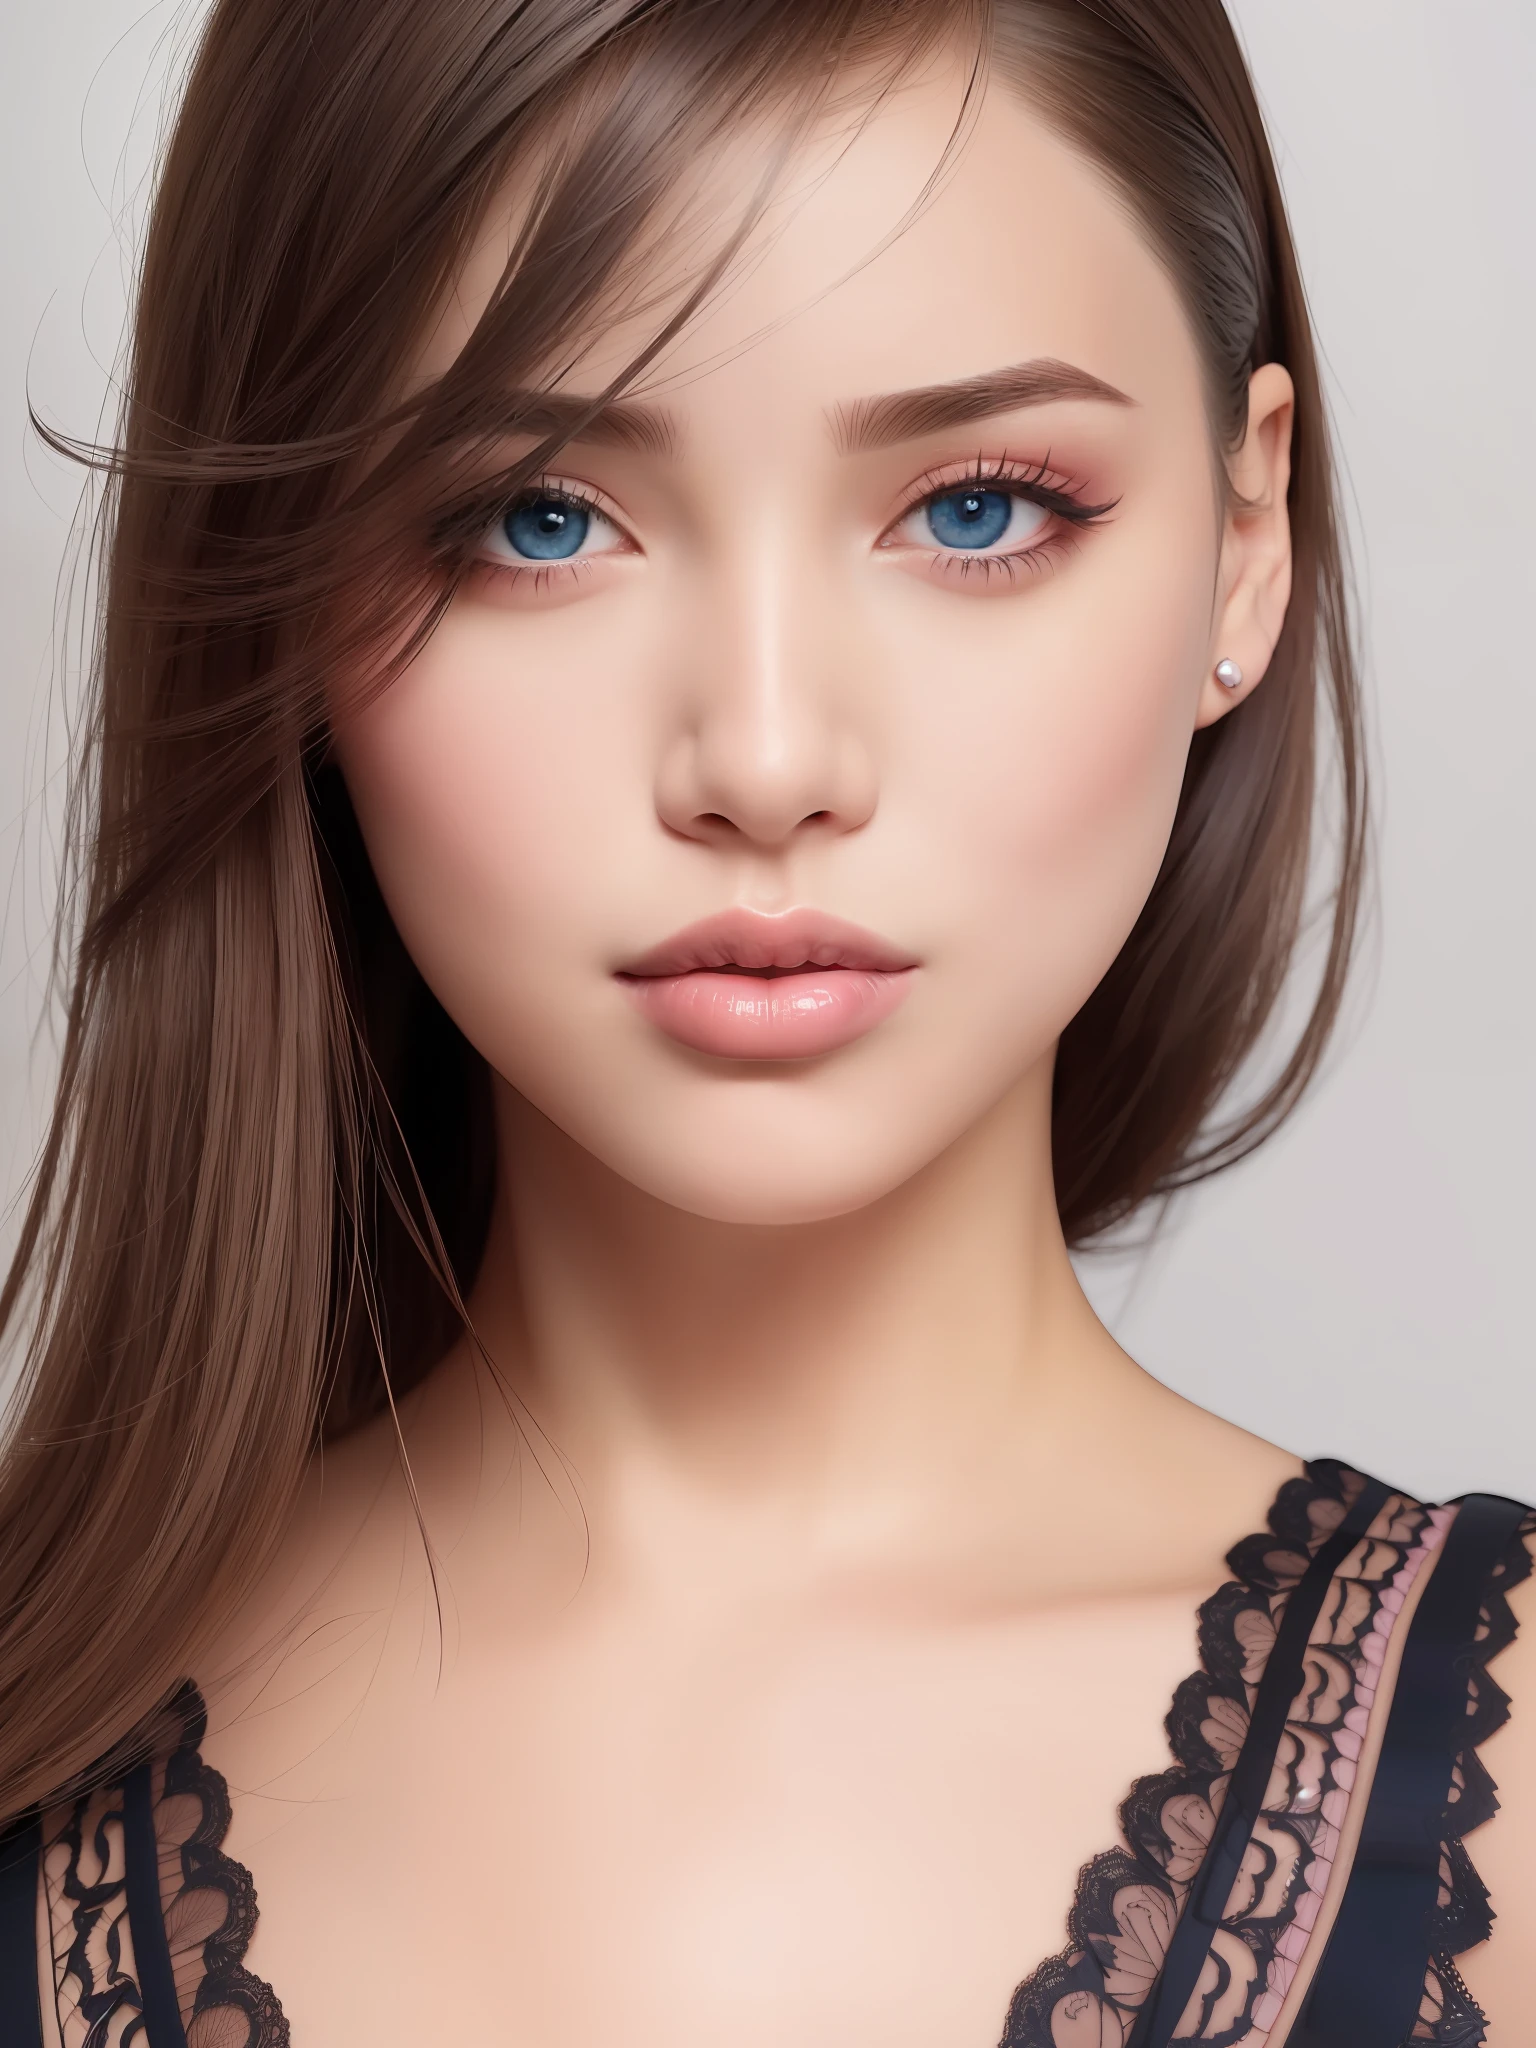 (шедевр, Лучшее качество, Чрезвычайно детализированное 8K, ультра HD, ультрадетализированный, очень подробный, Очень реалистично, фото реалистичный), (1 девушка:1.5), (Красивое реалистичное лицо, детальное реалистичное лицо), (Высокодетализированные реалистичные натуральные черные волосы, красивая реалистичная прическа), (красивые реалистичные глаза, Высокодетализированные реалистичные голубые глаза, пропорциональные глаза, реалистичные ученики, высокая детализация учеников), (Высокодетализированные реалистичные естественные брови), (высокая детализация реалистичных губ, красивые реалистичные губы, розовые помады), чрезвычайно детализированный реалистичный скин,